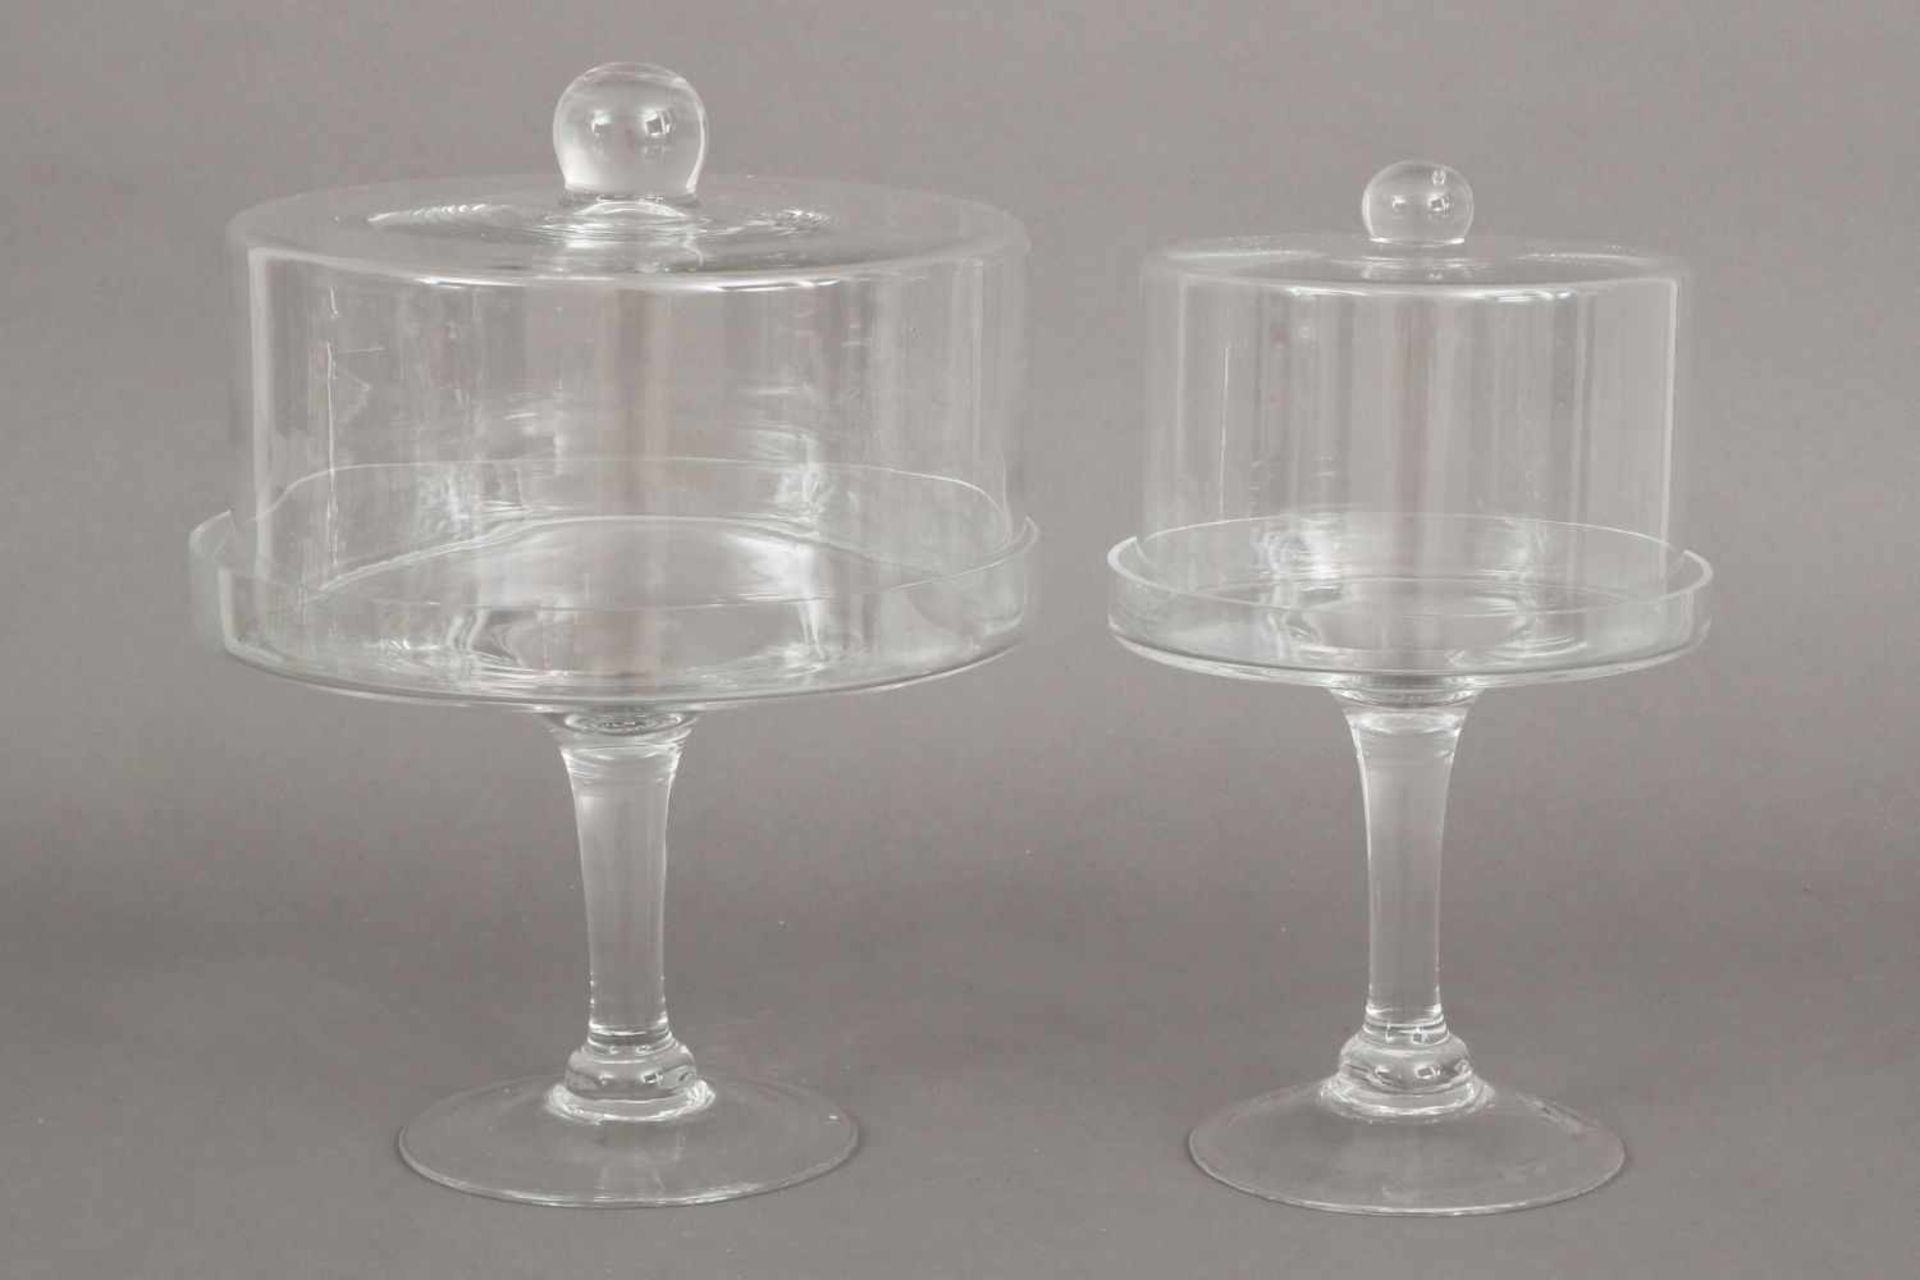 Paar Fußschalen mit Deckelfarbloses Glas, runder Glasteller auf schlankem Schaft, runder Stand, - Bild 2 aus 2